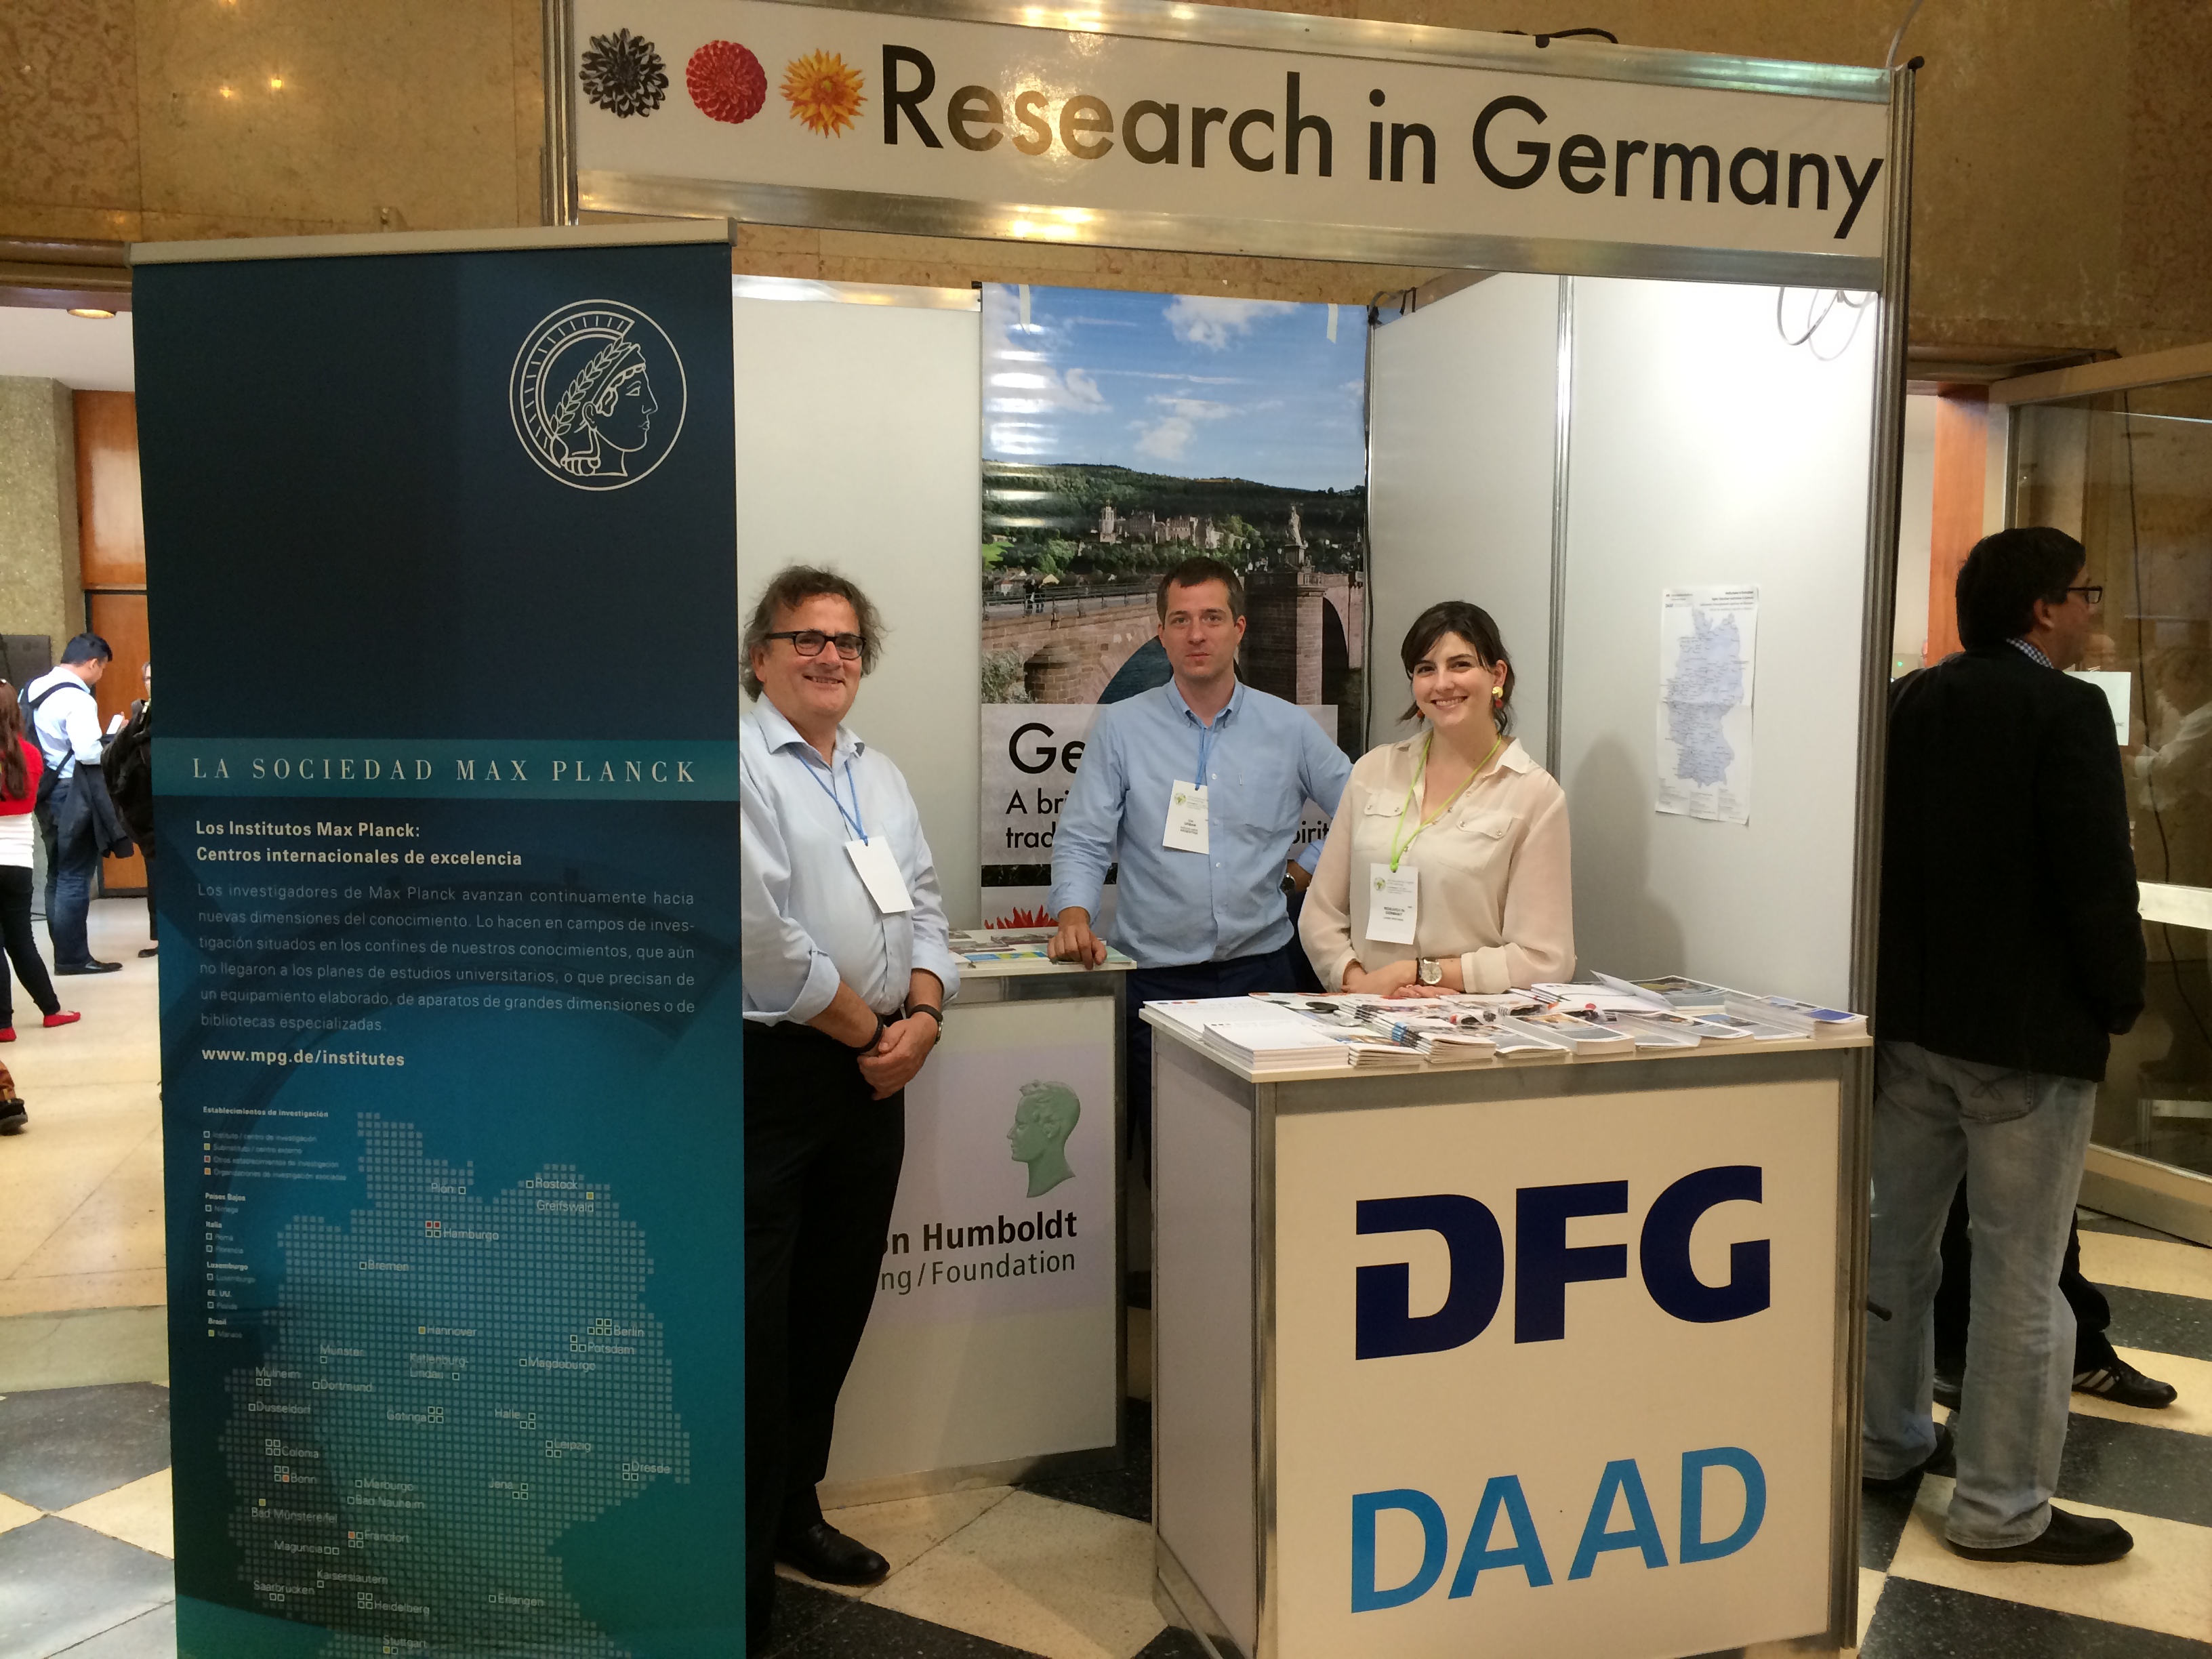 Representantes de instituições alemãs no estande Research in Germany (da esq. para a dir.): Dr. Andreas Trepte (MPG), Dr. Urs Urban (DAAD) e Laura Redondo (DFG)